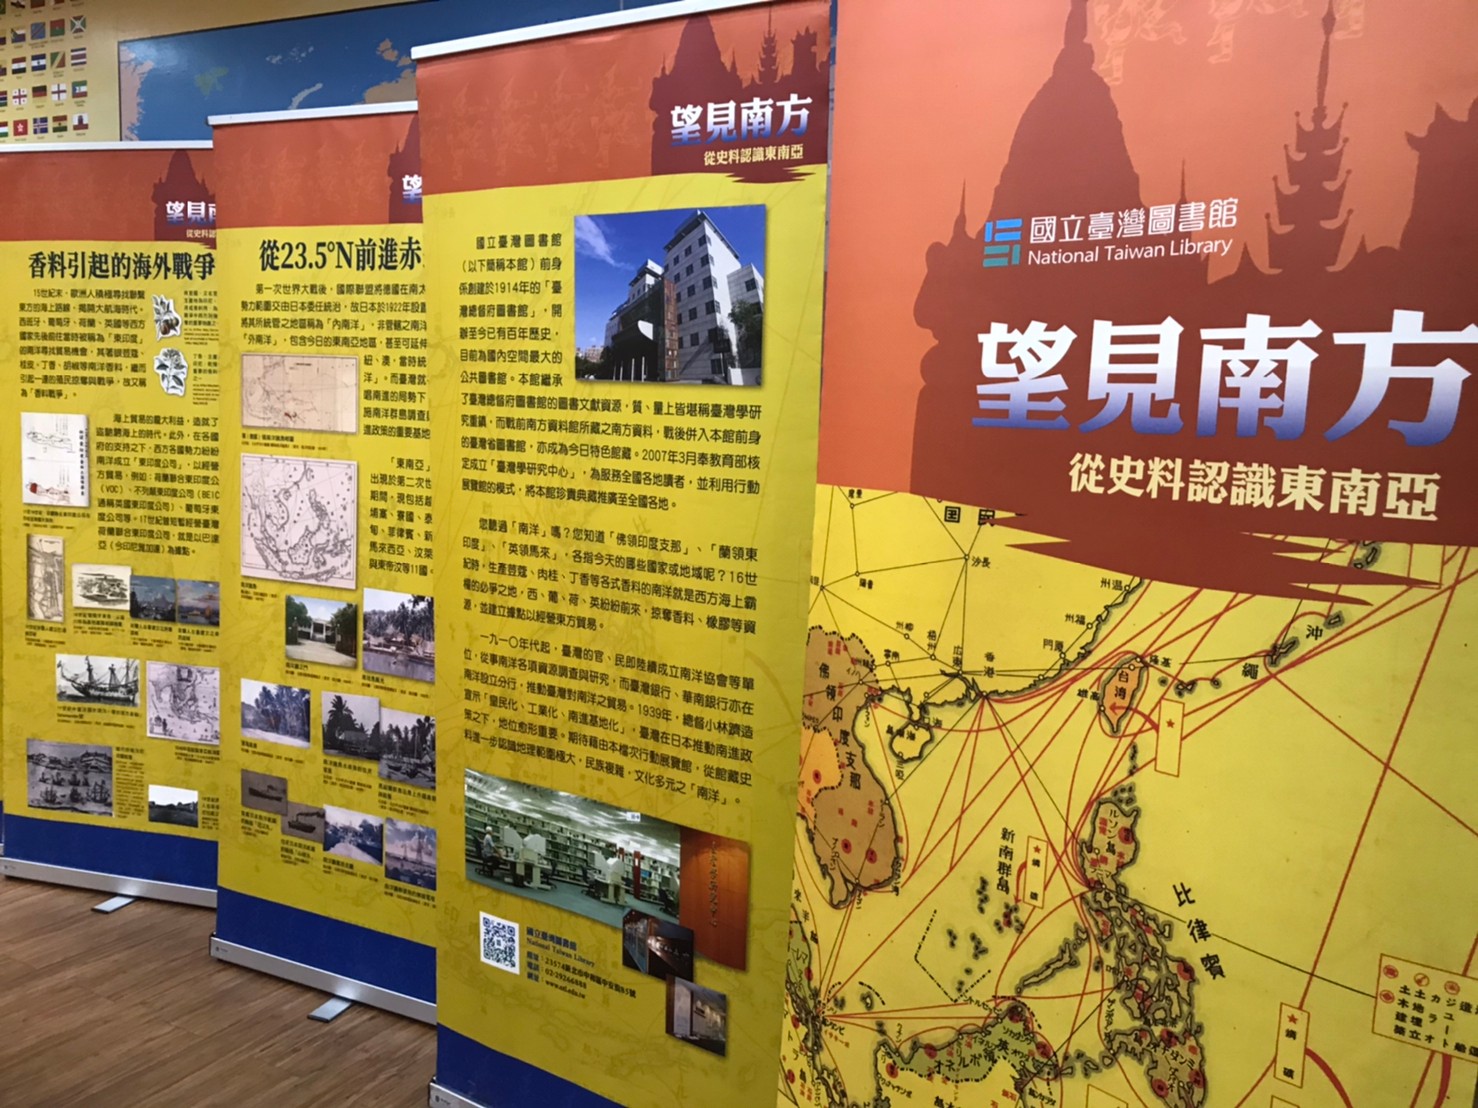 [訊息公告] 國立台灣圖書館_望見南方展覽現況與回饋